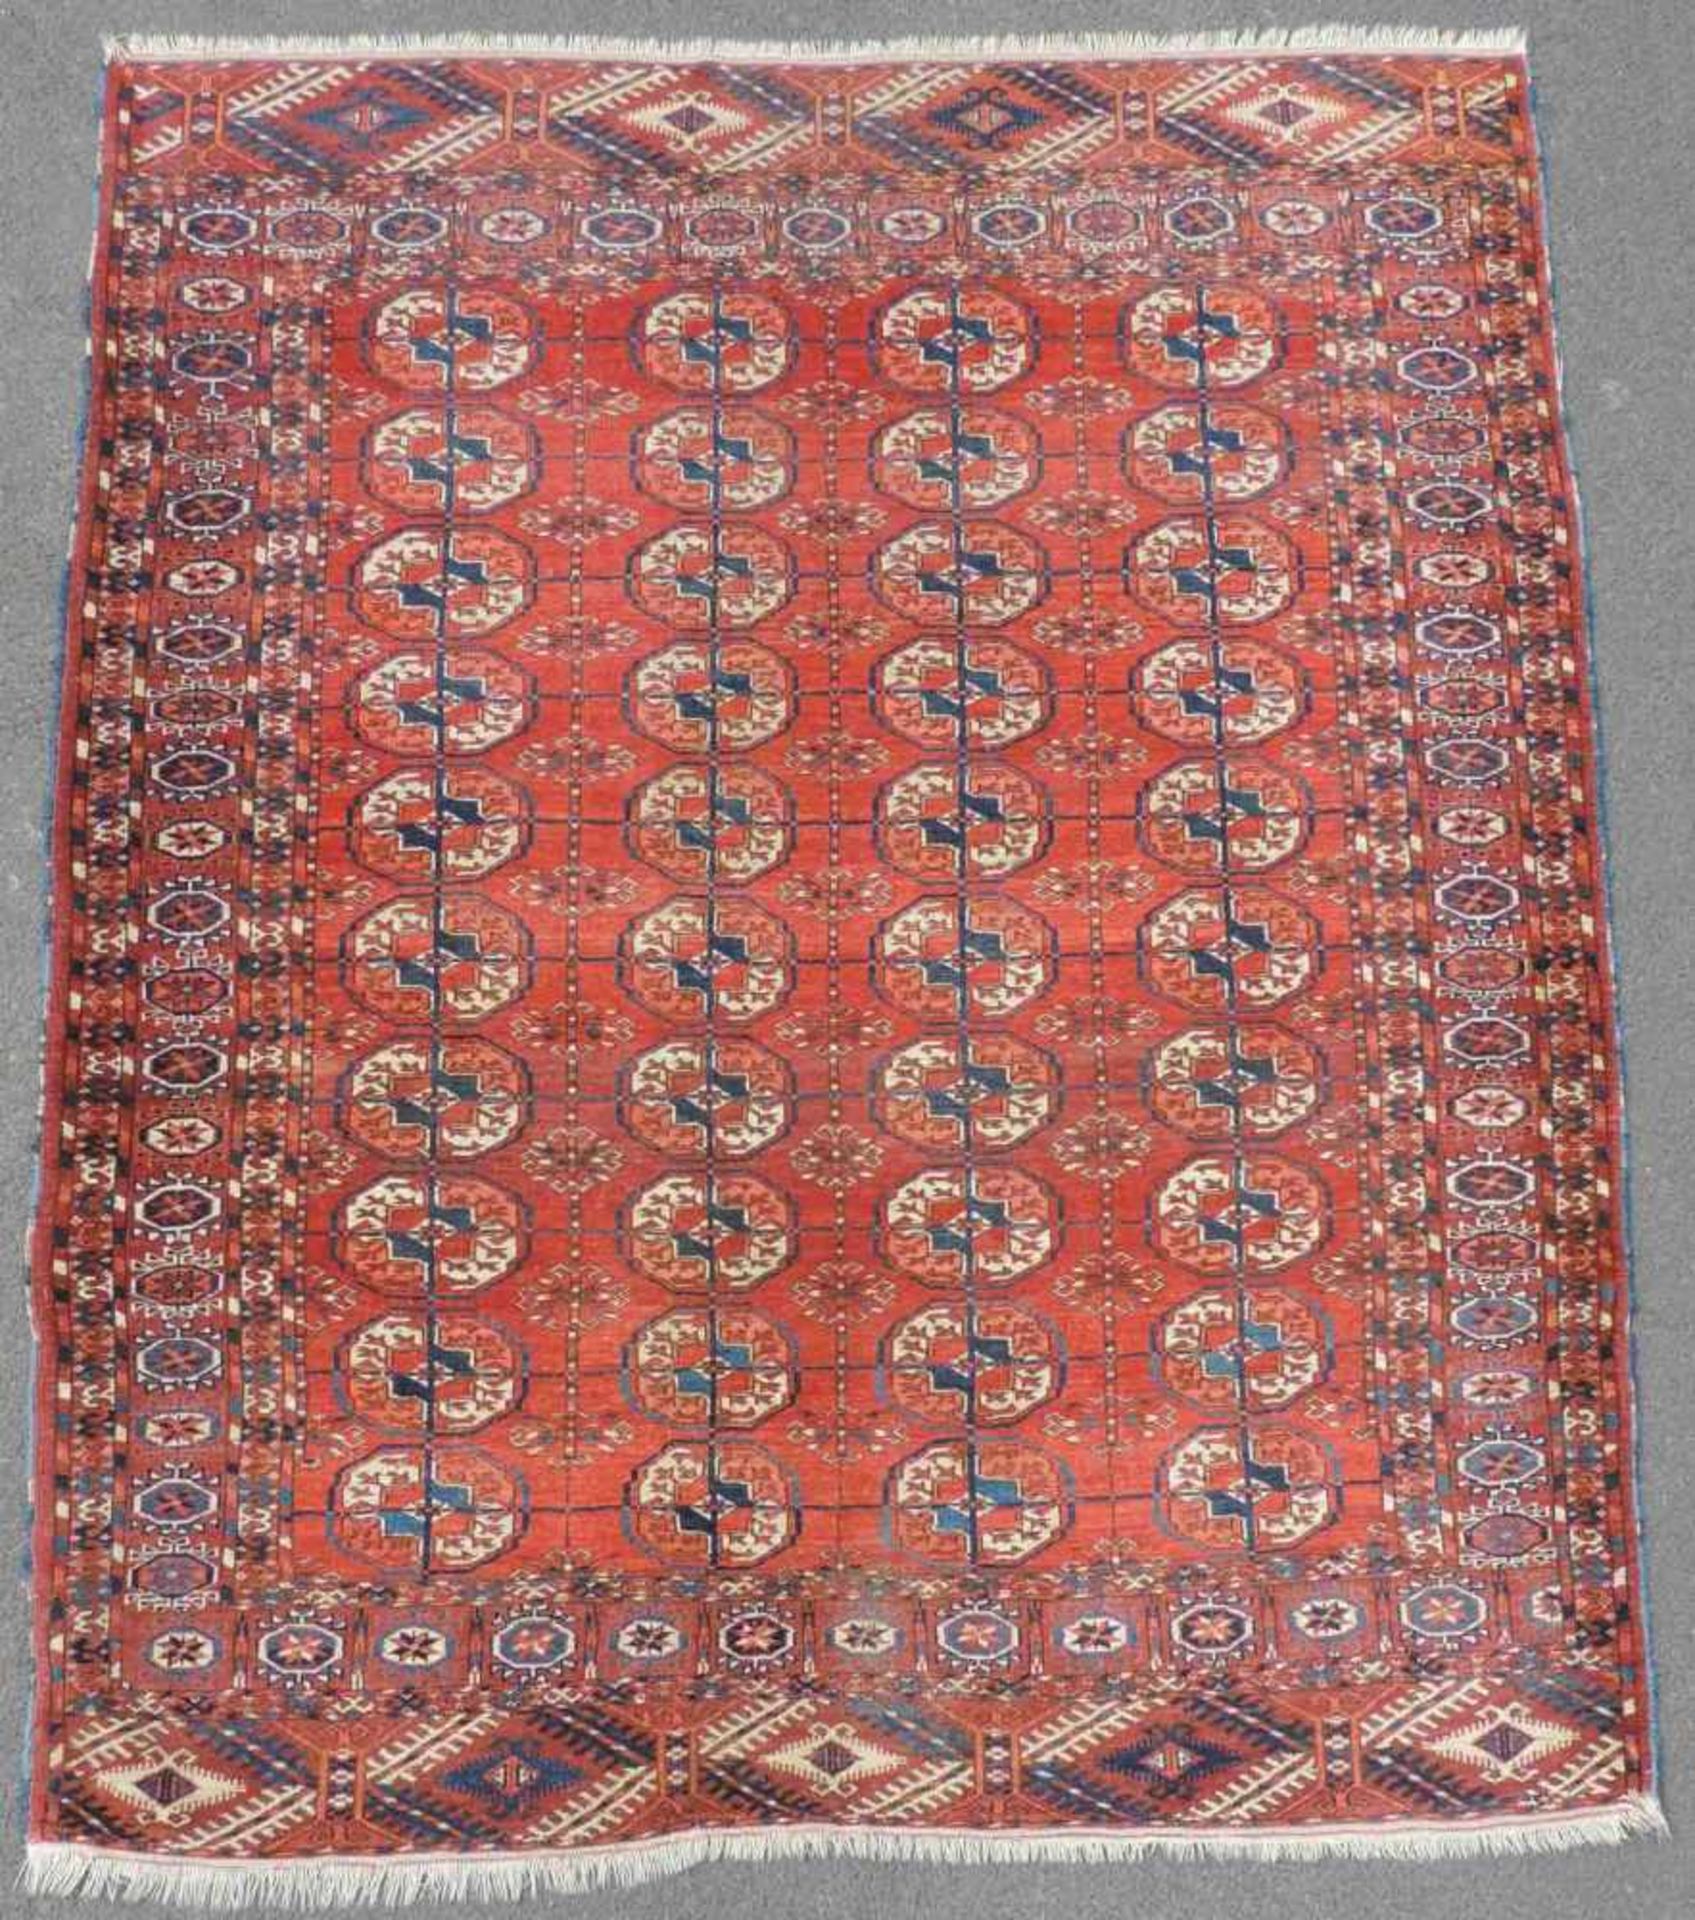 Tekke Hauptteppich. Stammesteppich. Turkmenistan, antik, um 1900. 184 cm x 154 cm. Handgeknüpft.